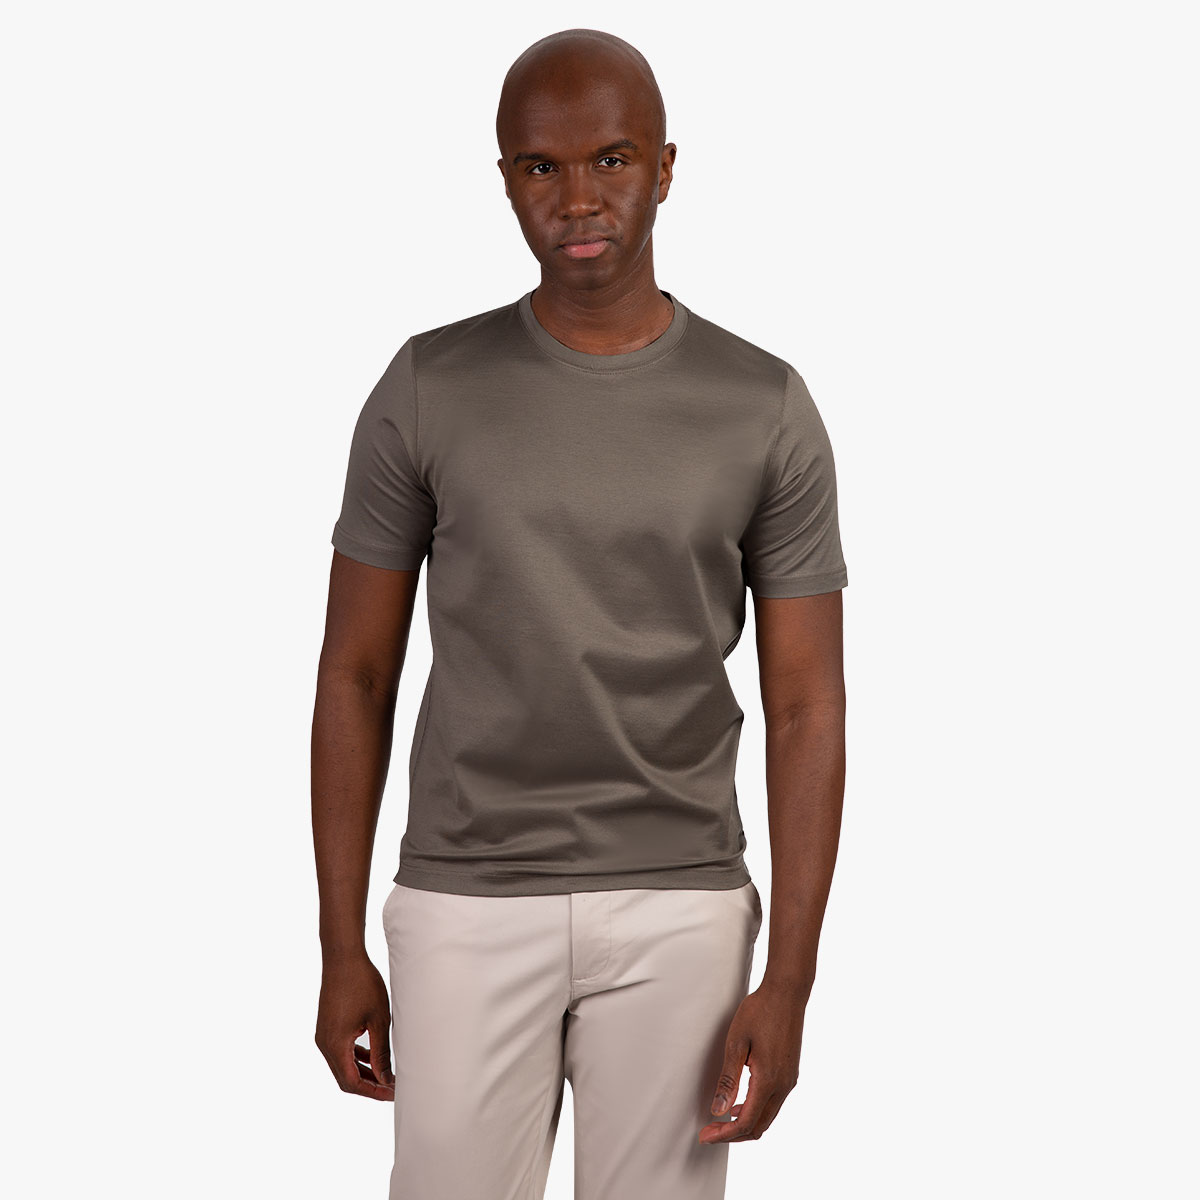 Leicht glänzendes Rundhals-T-Shirt in taupe